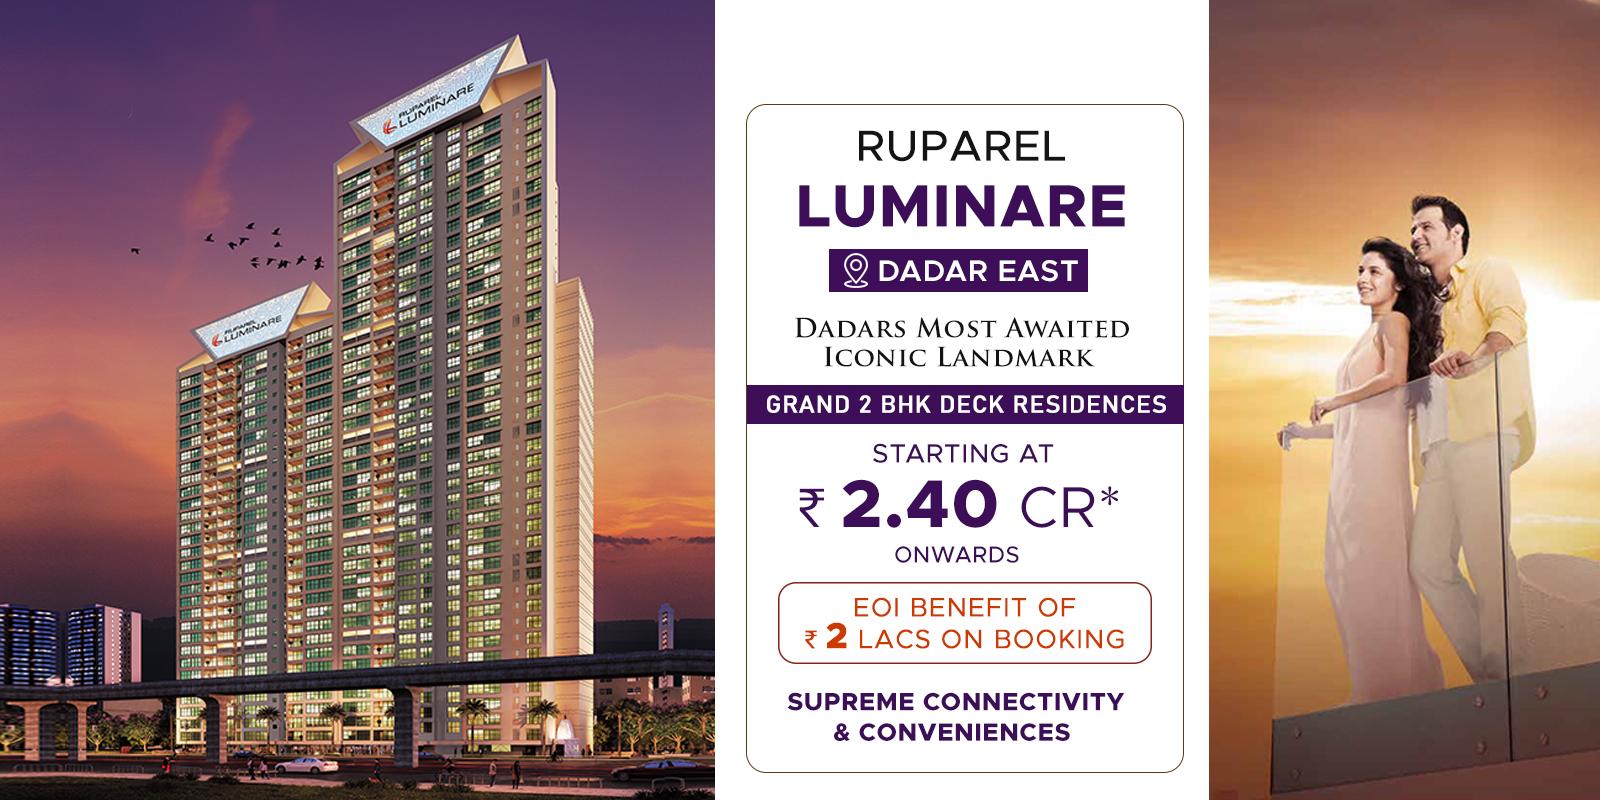 Ruparel luminare Dadar East-ruparel-luminare-banner-new-update-price.jpg